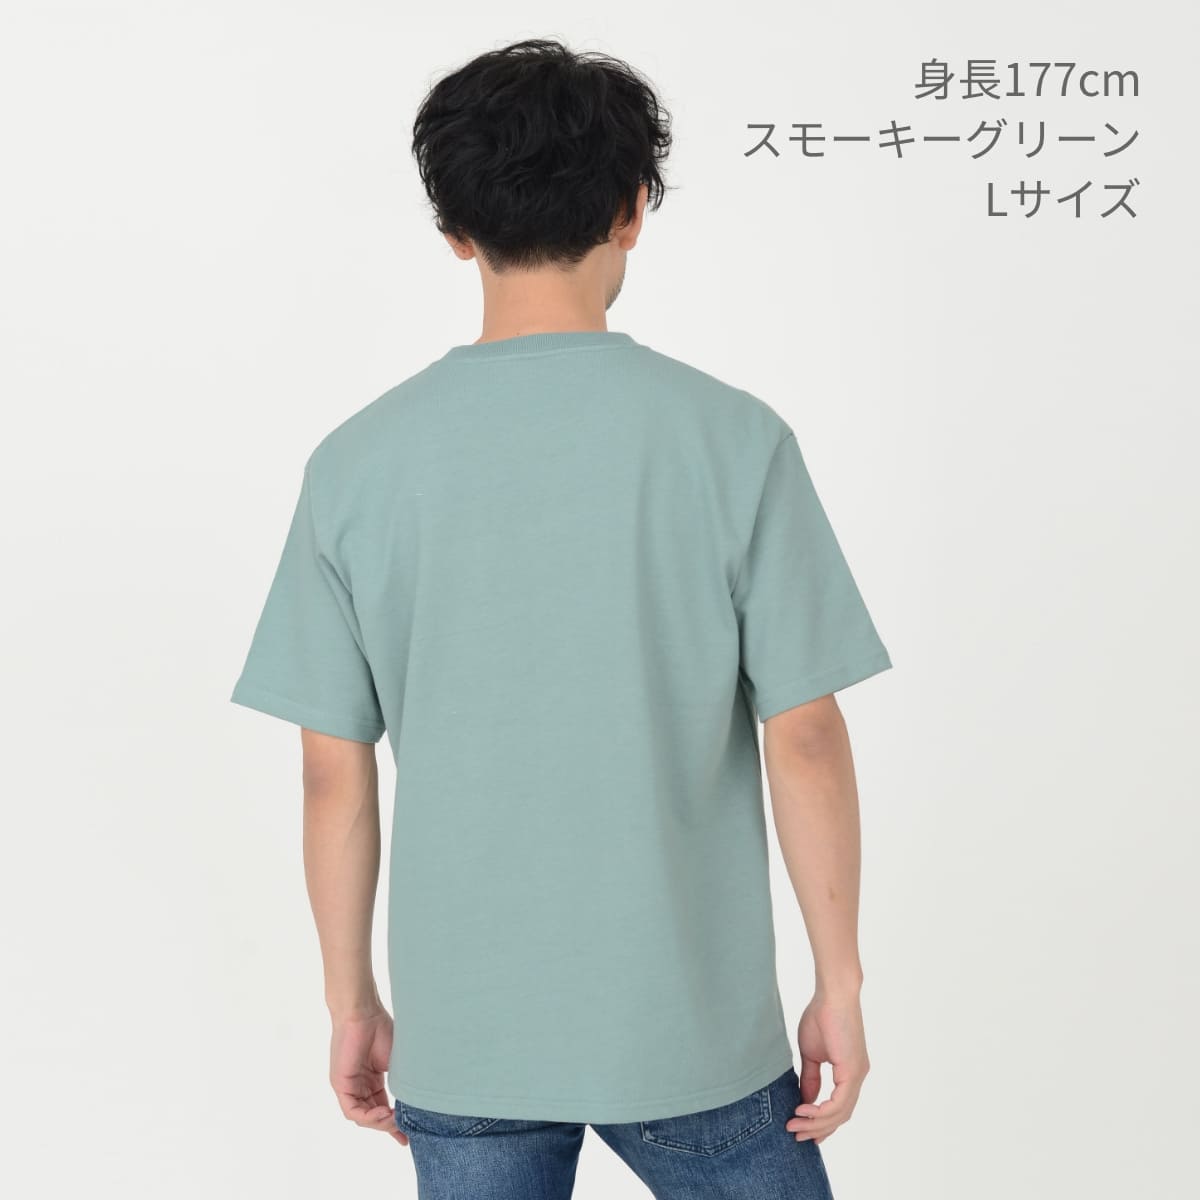 10.2オンスポケット付きスーパーヘビーウェイトTシャツ | メンズ | 1枚 | MS1157 | グレージュ